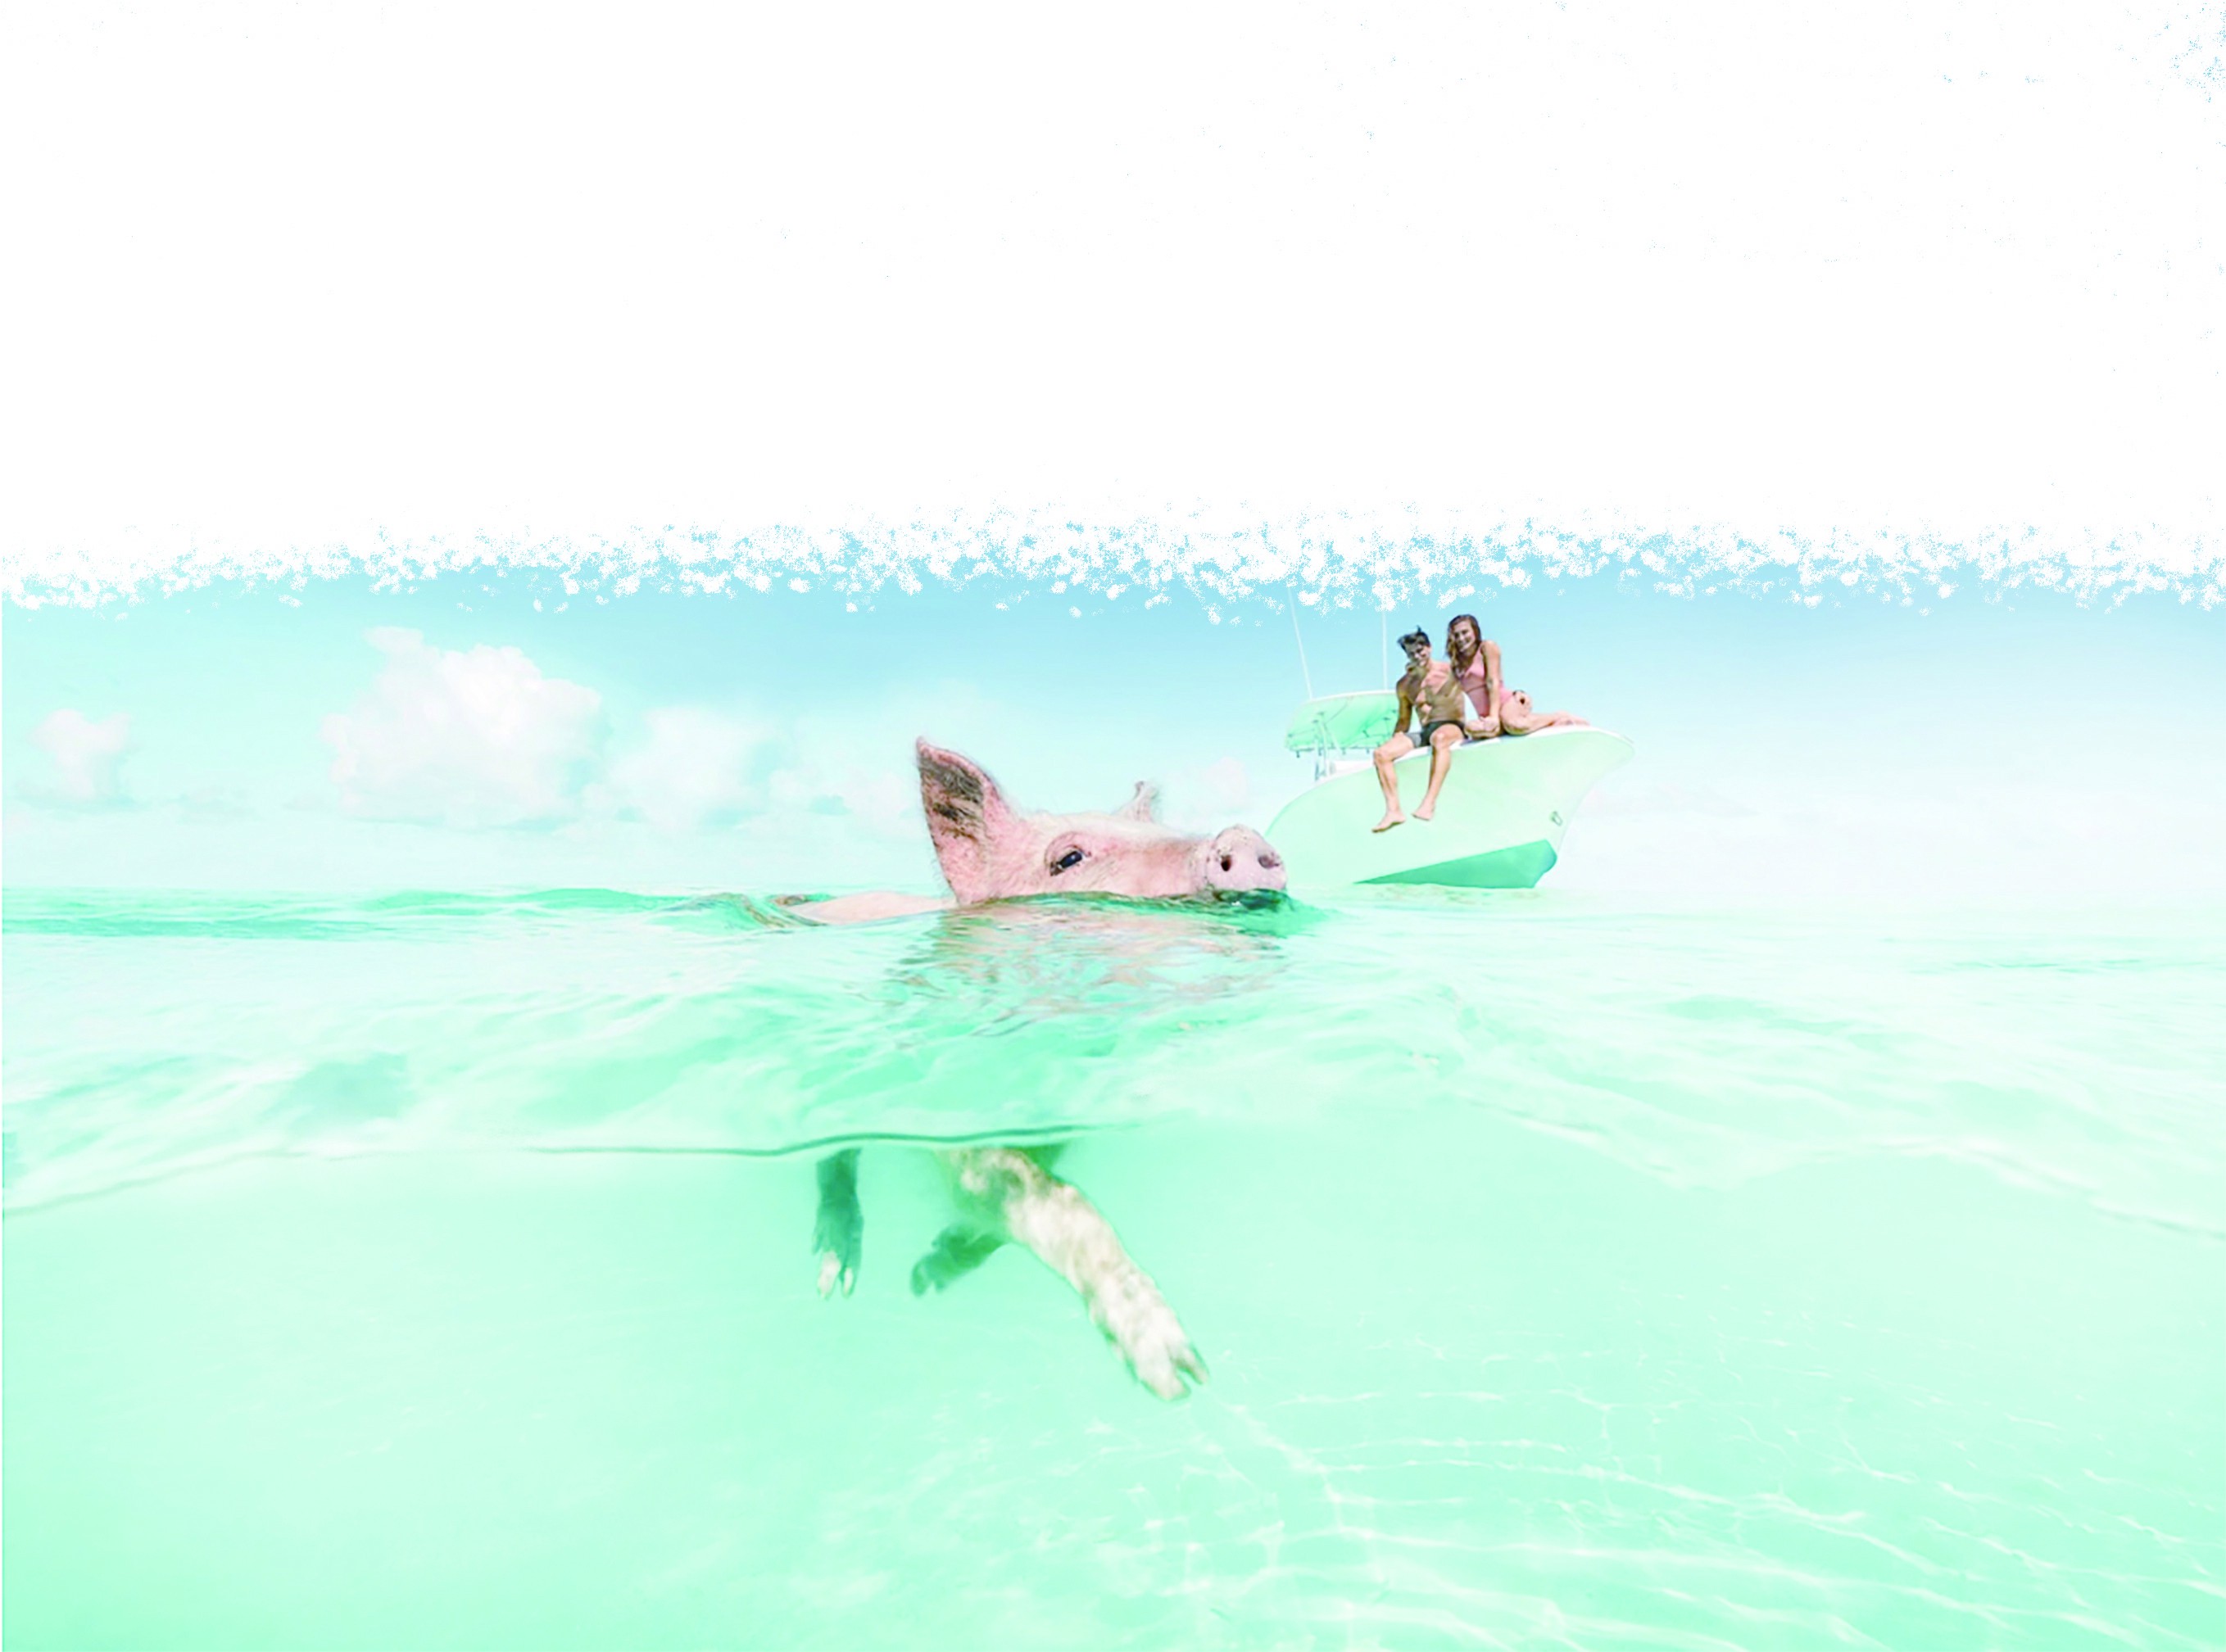 在大少校Cay的野生，游泳的猪在巴哈马 库存图片. 图片 包括有 横向, 海岛, 火箭筒, 海岸线, 岩礁 - 79310109